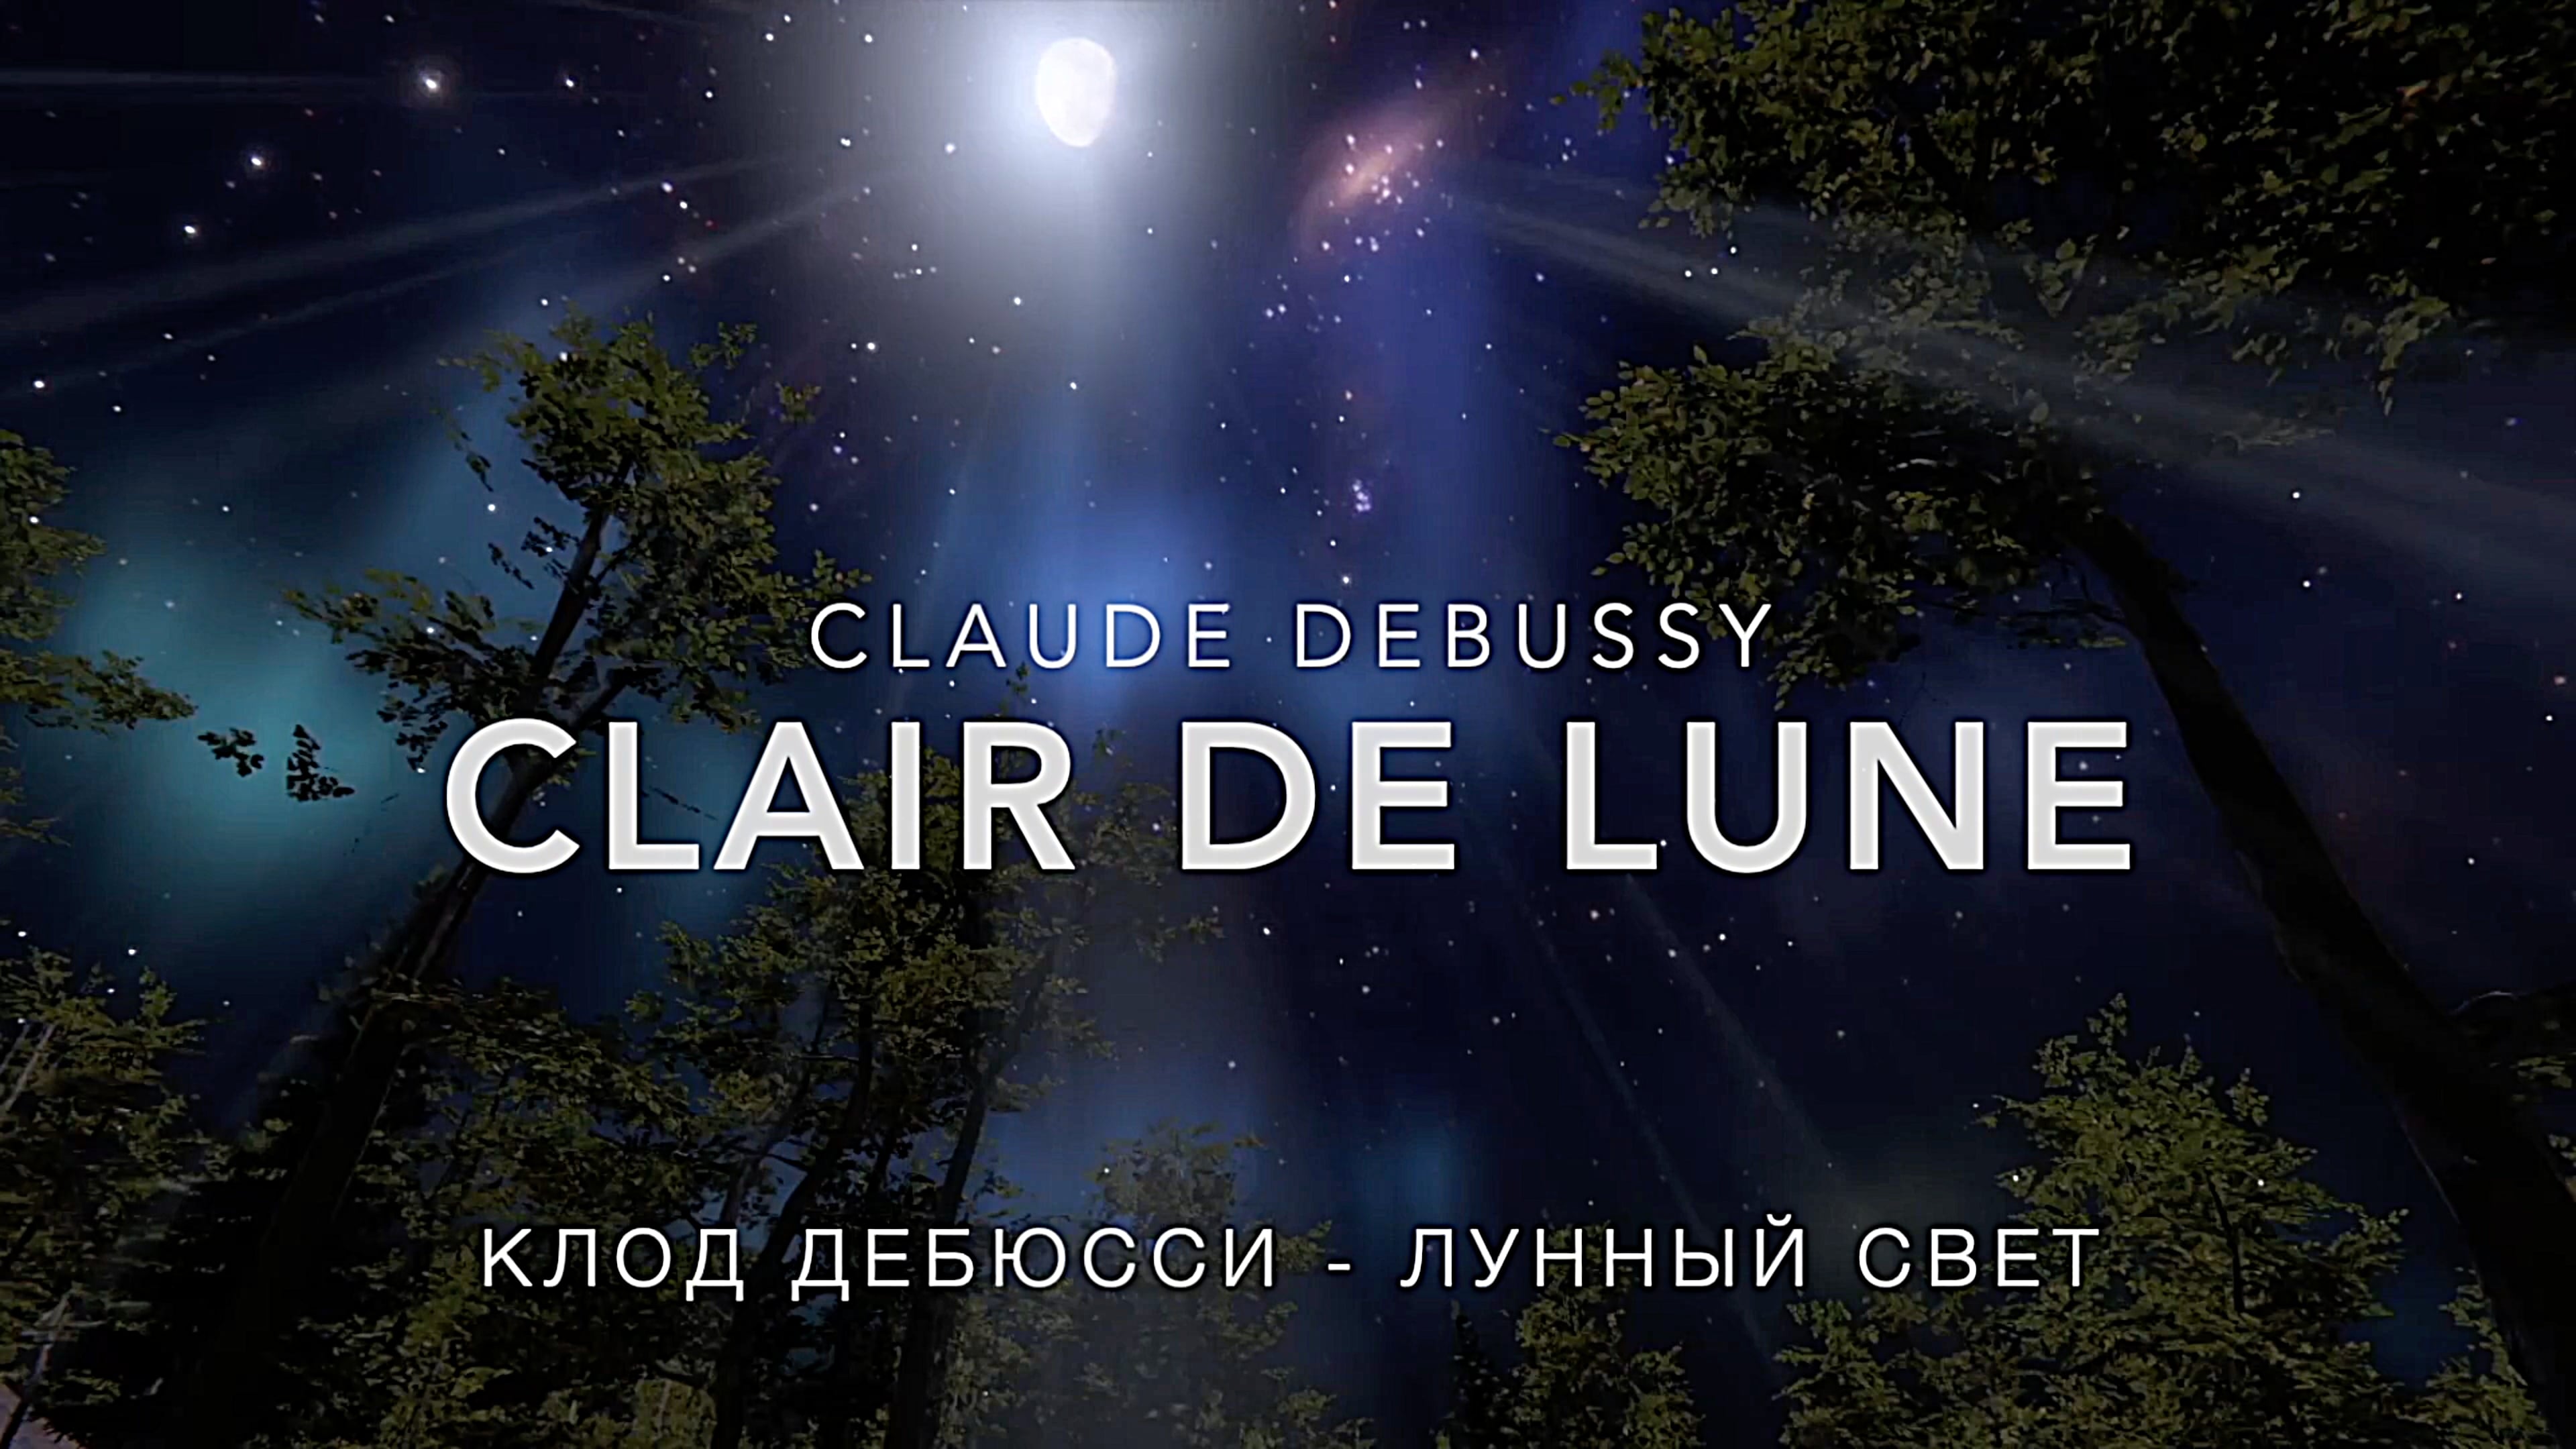 Clair de la lune. Лунный свет музыка Дебюсси.